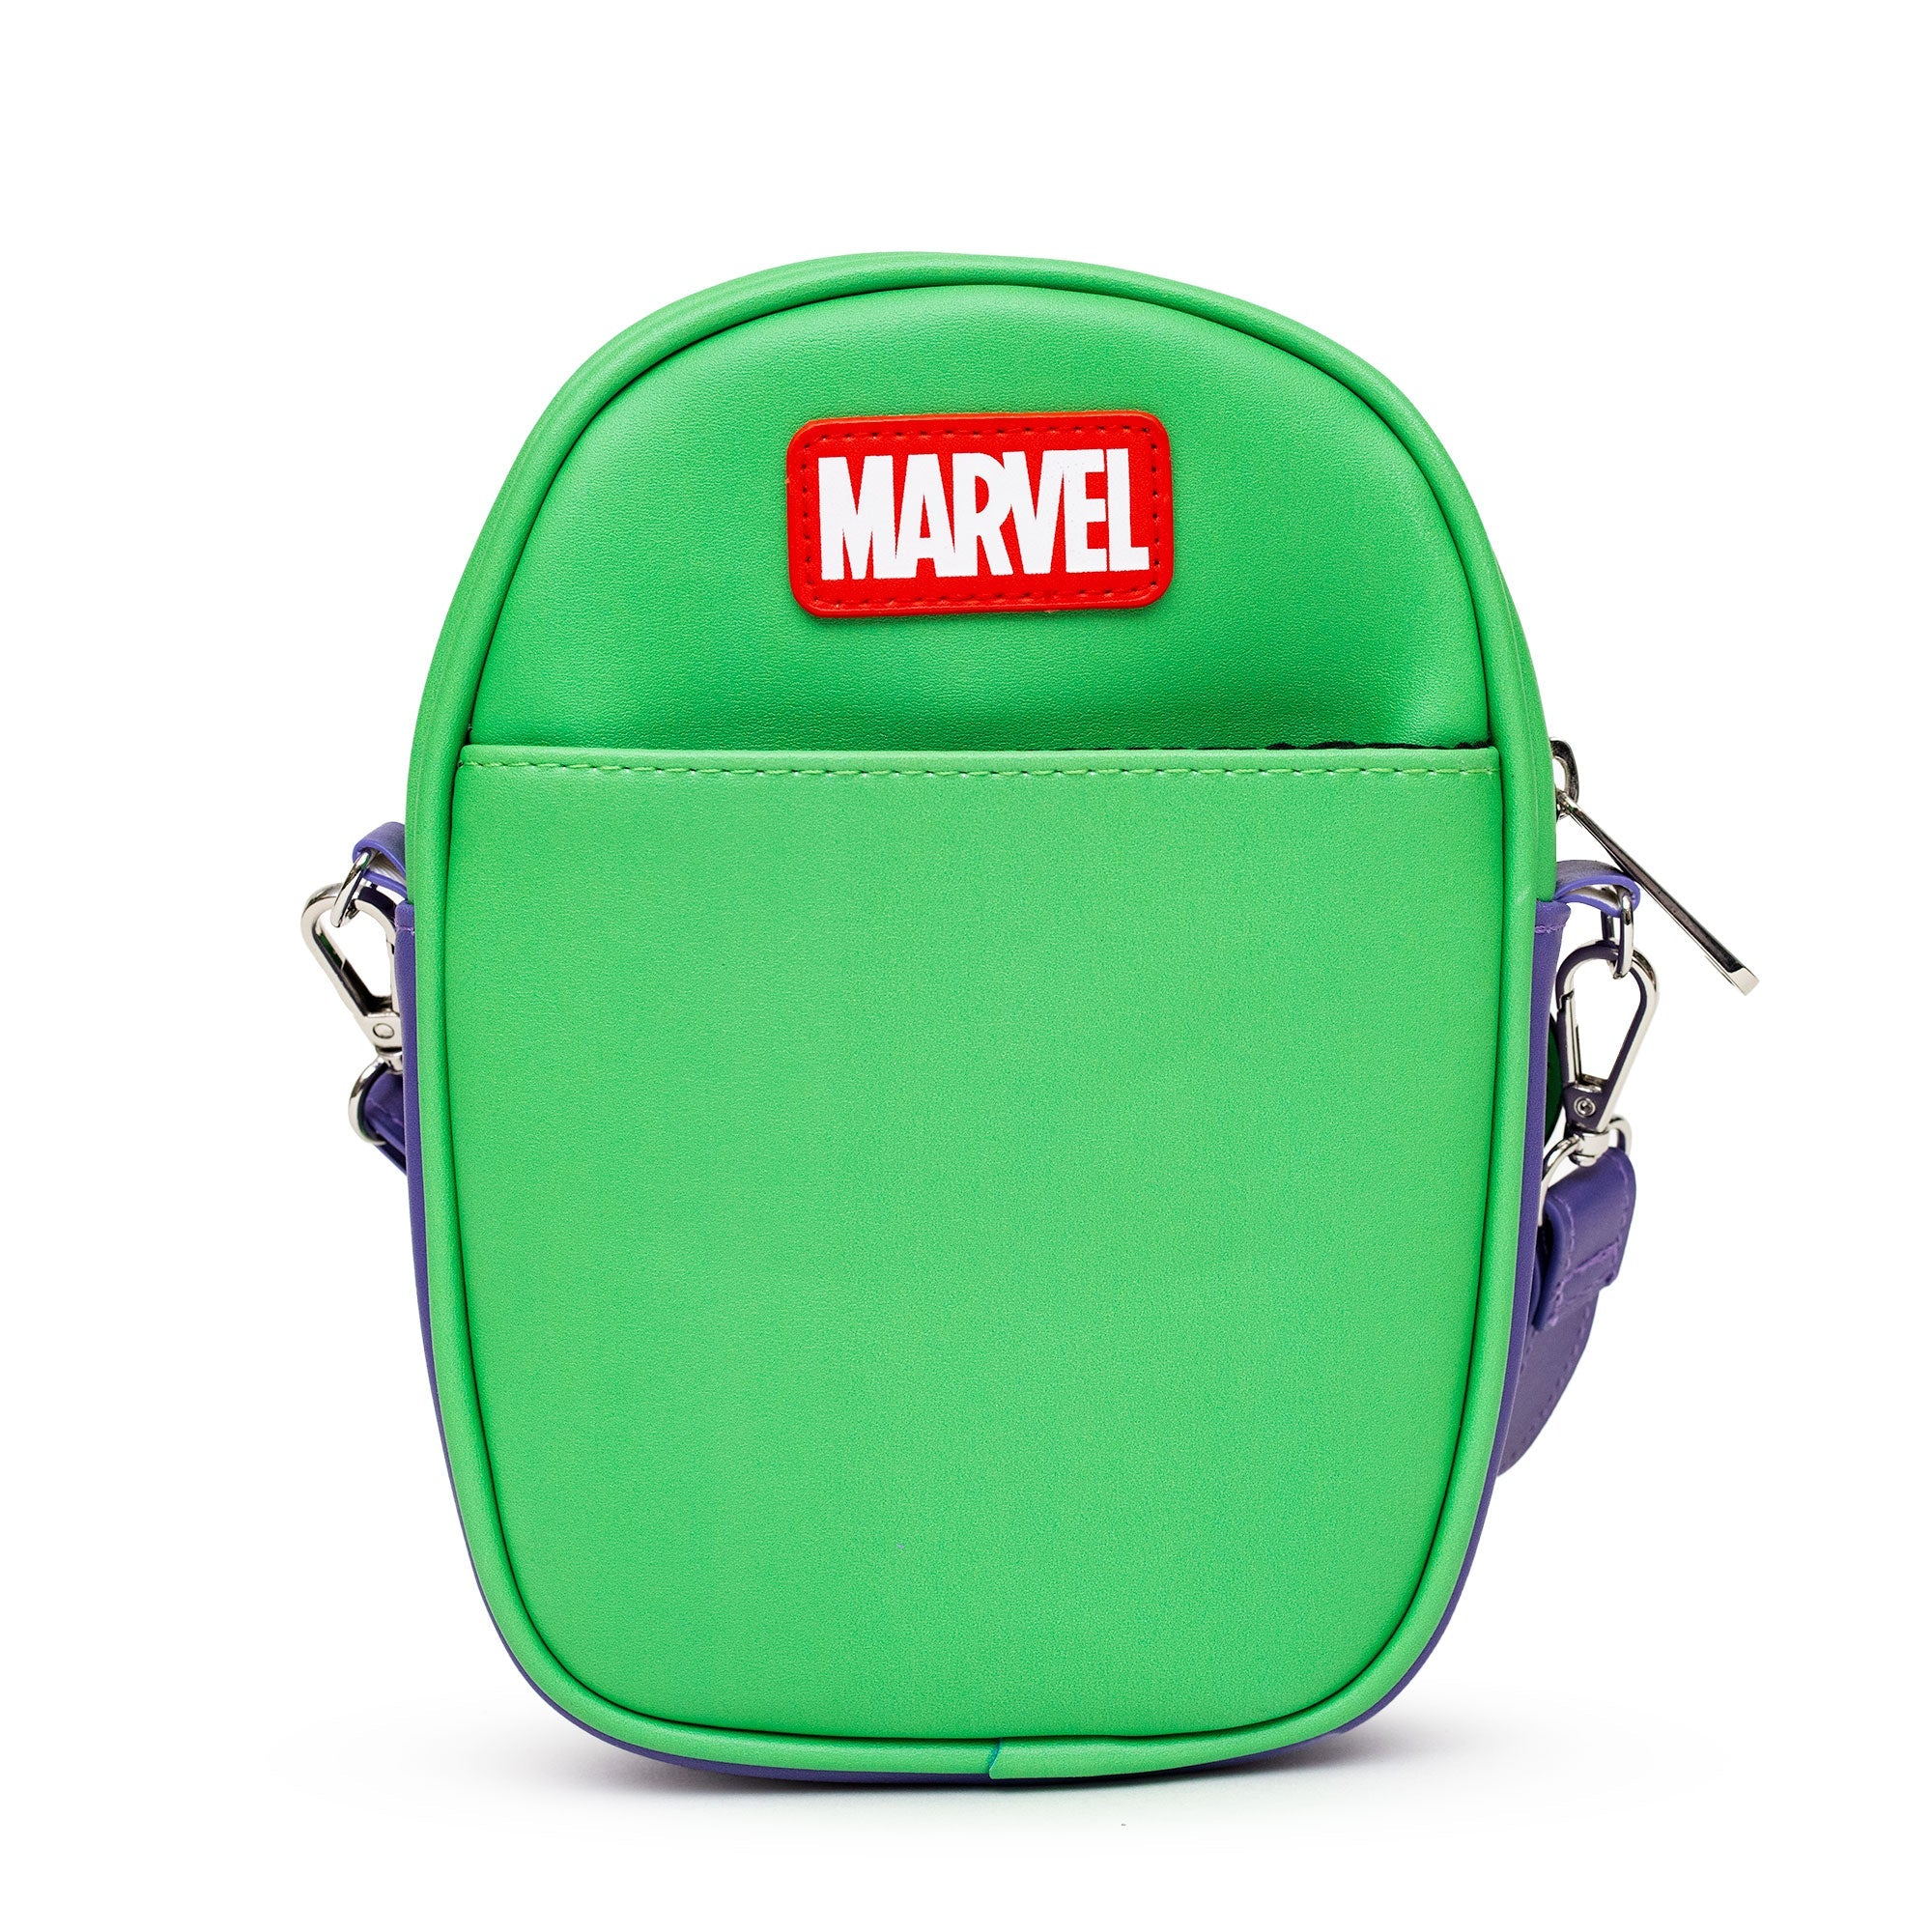 DIY Avengers Bag #AvengersEvent - Mom Endeavors